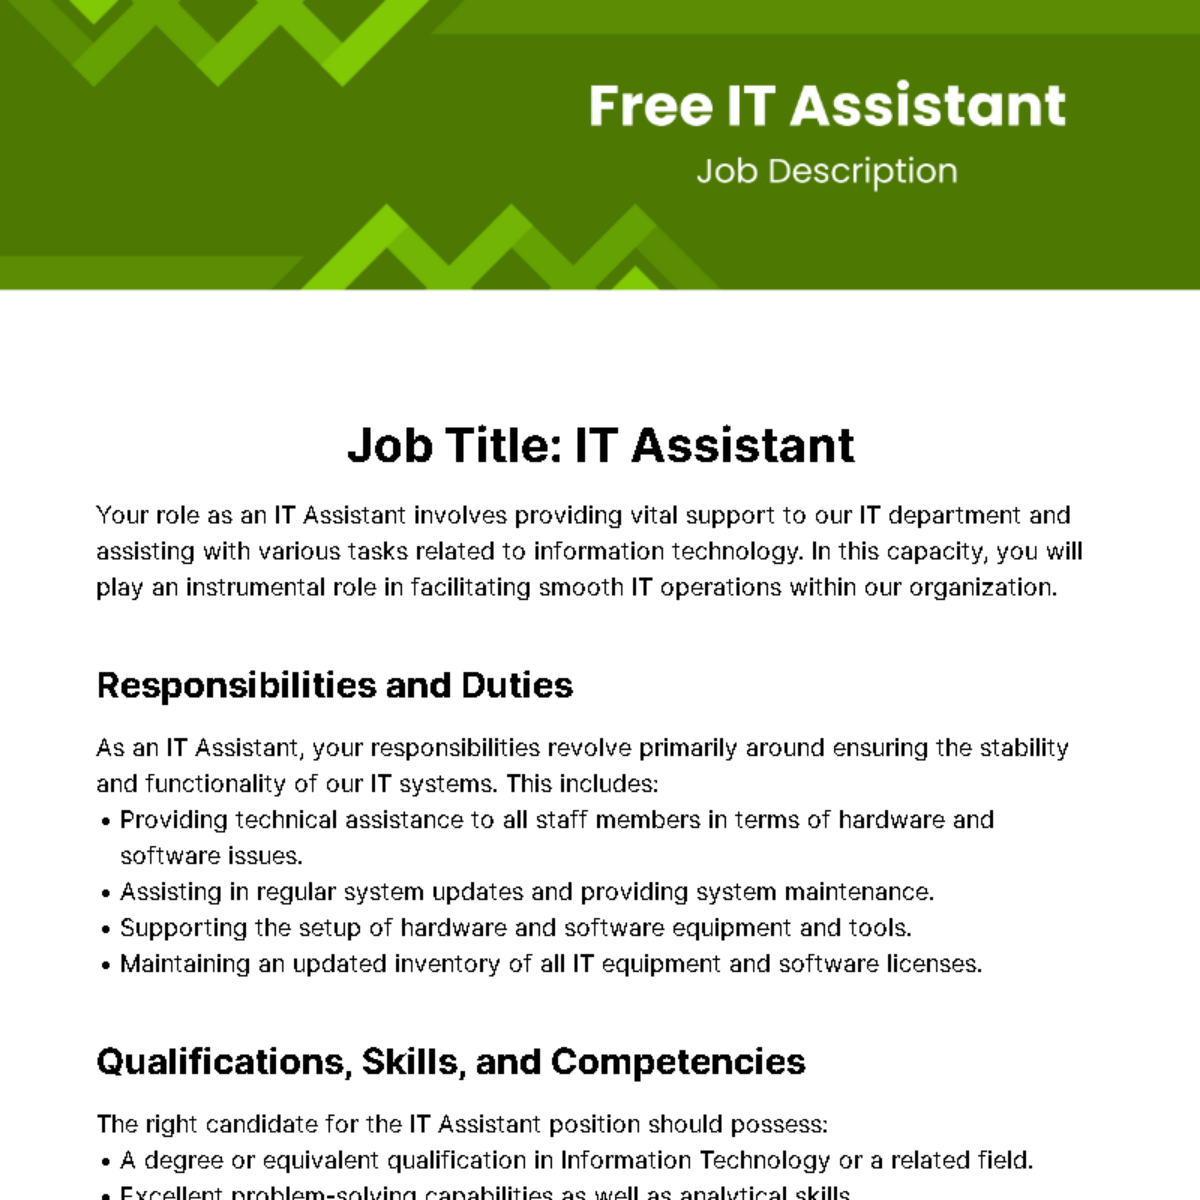 Free IT Assistant Job Description Template